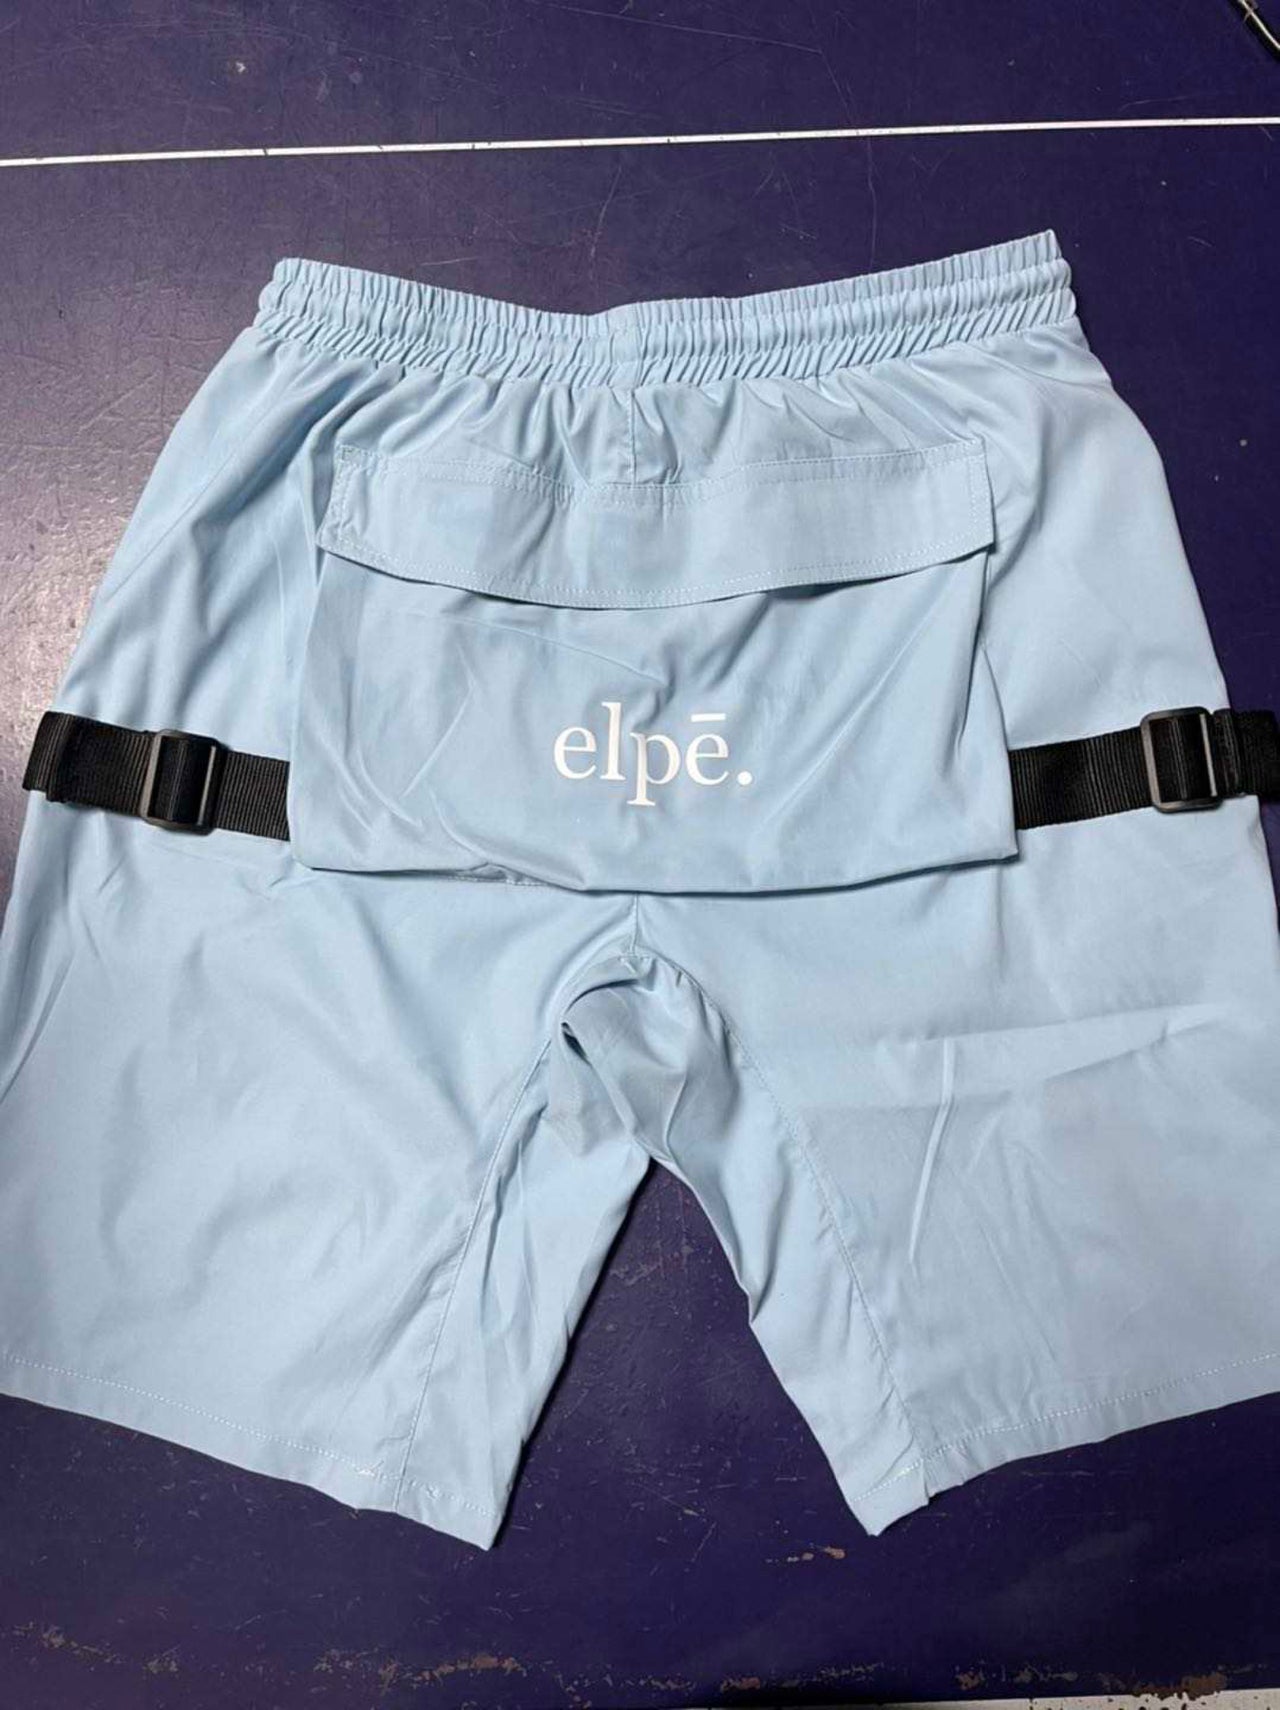 Elpē Shorts (Coming Soon)